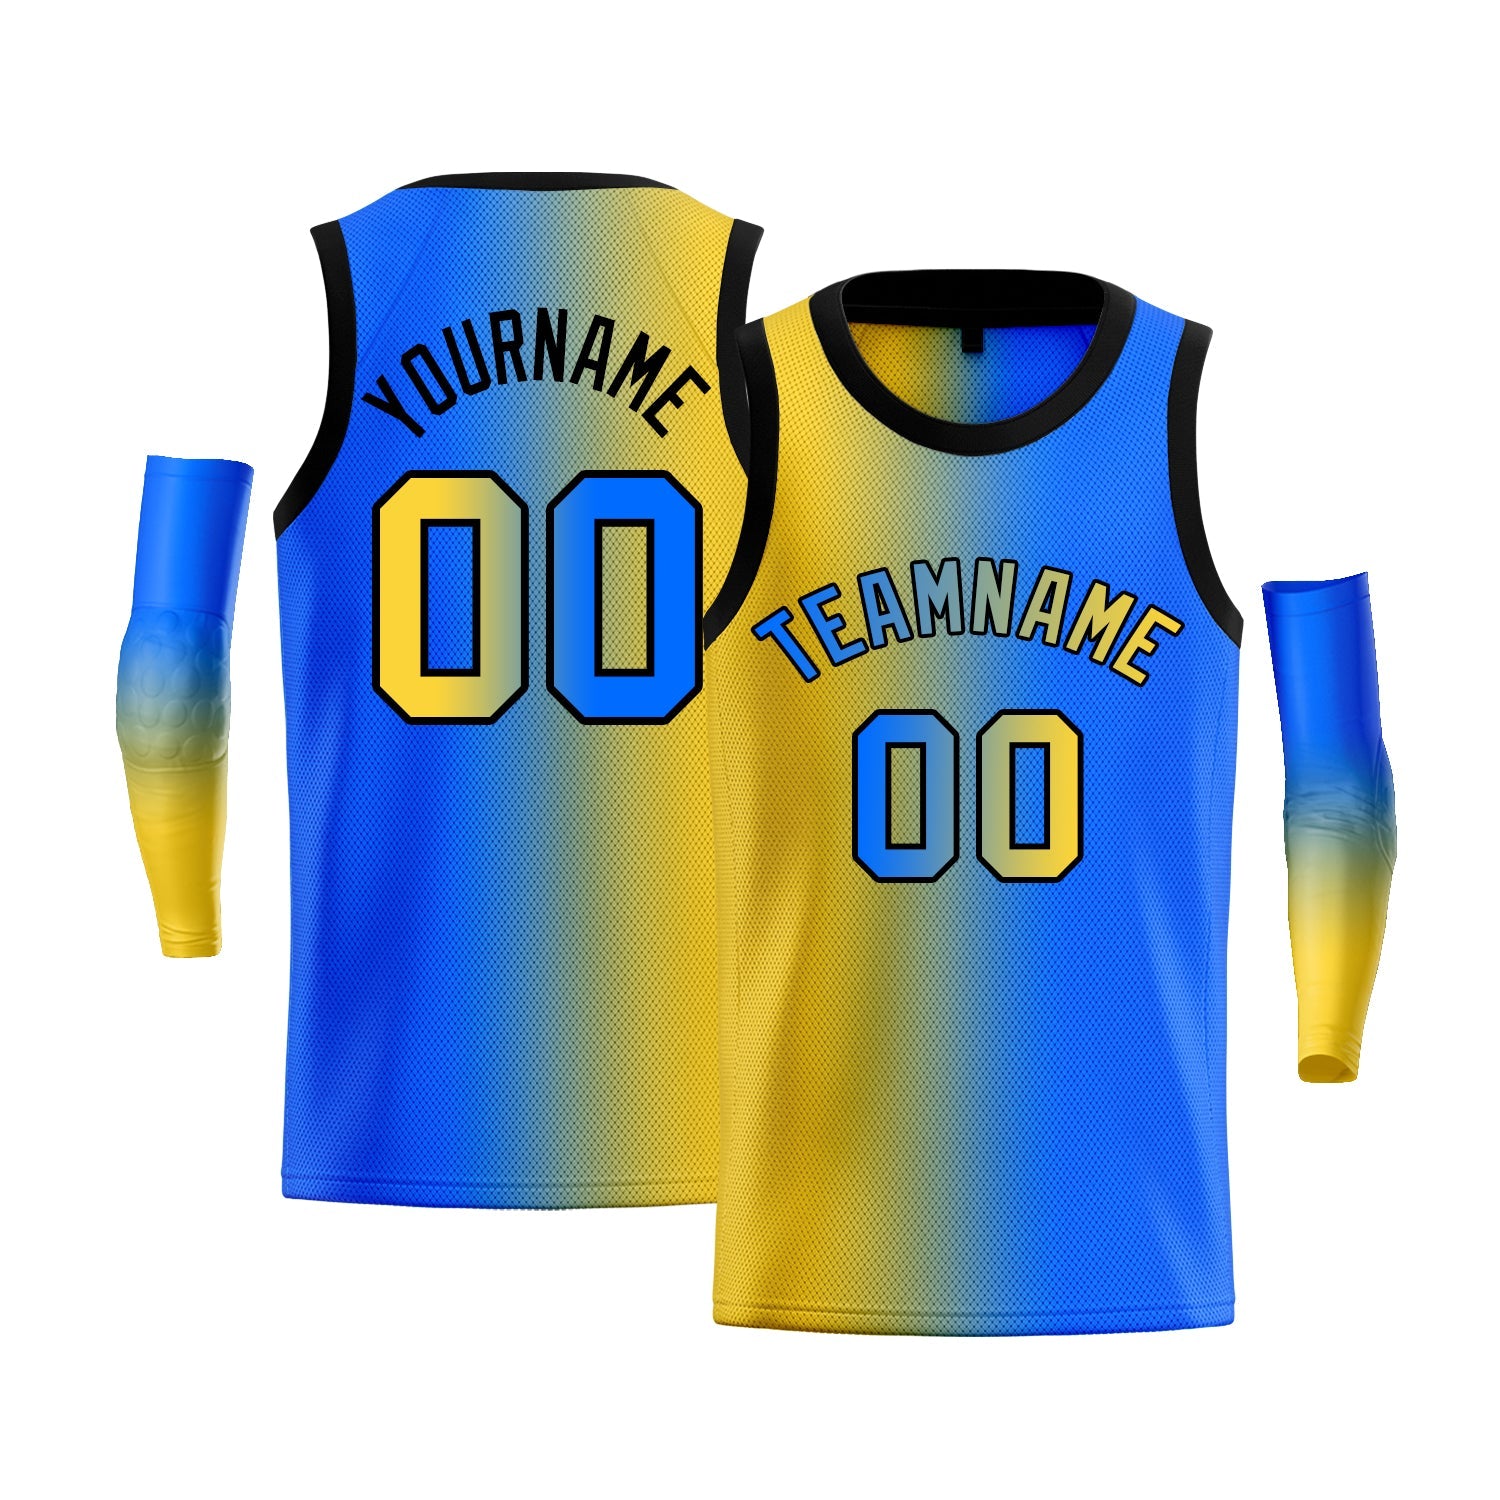 KXK Blue and Yellow Basketball Jersey, Yellow Black Jersey - KXKSHOP